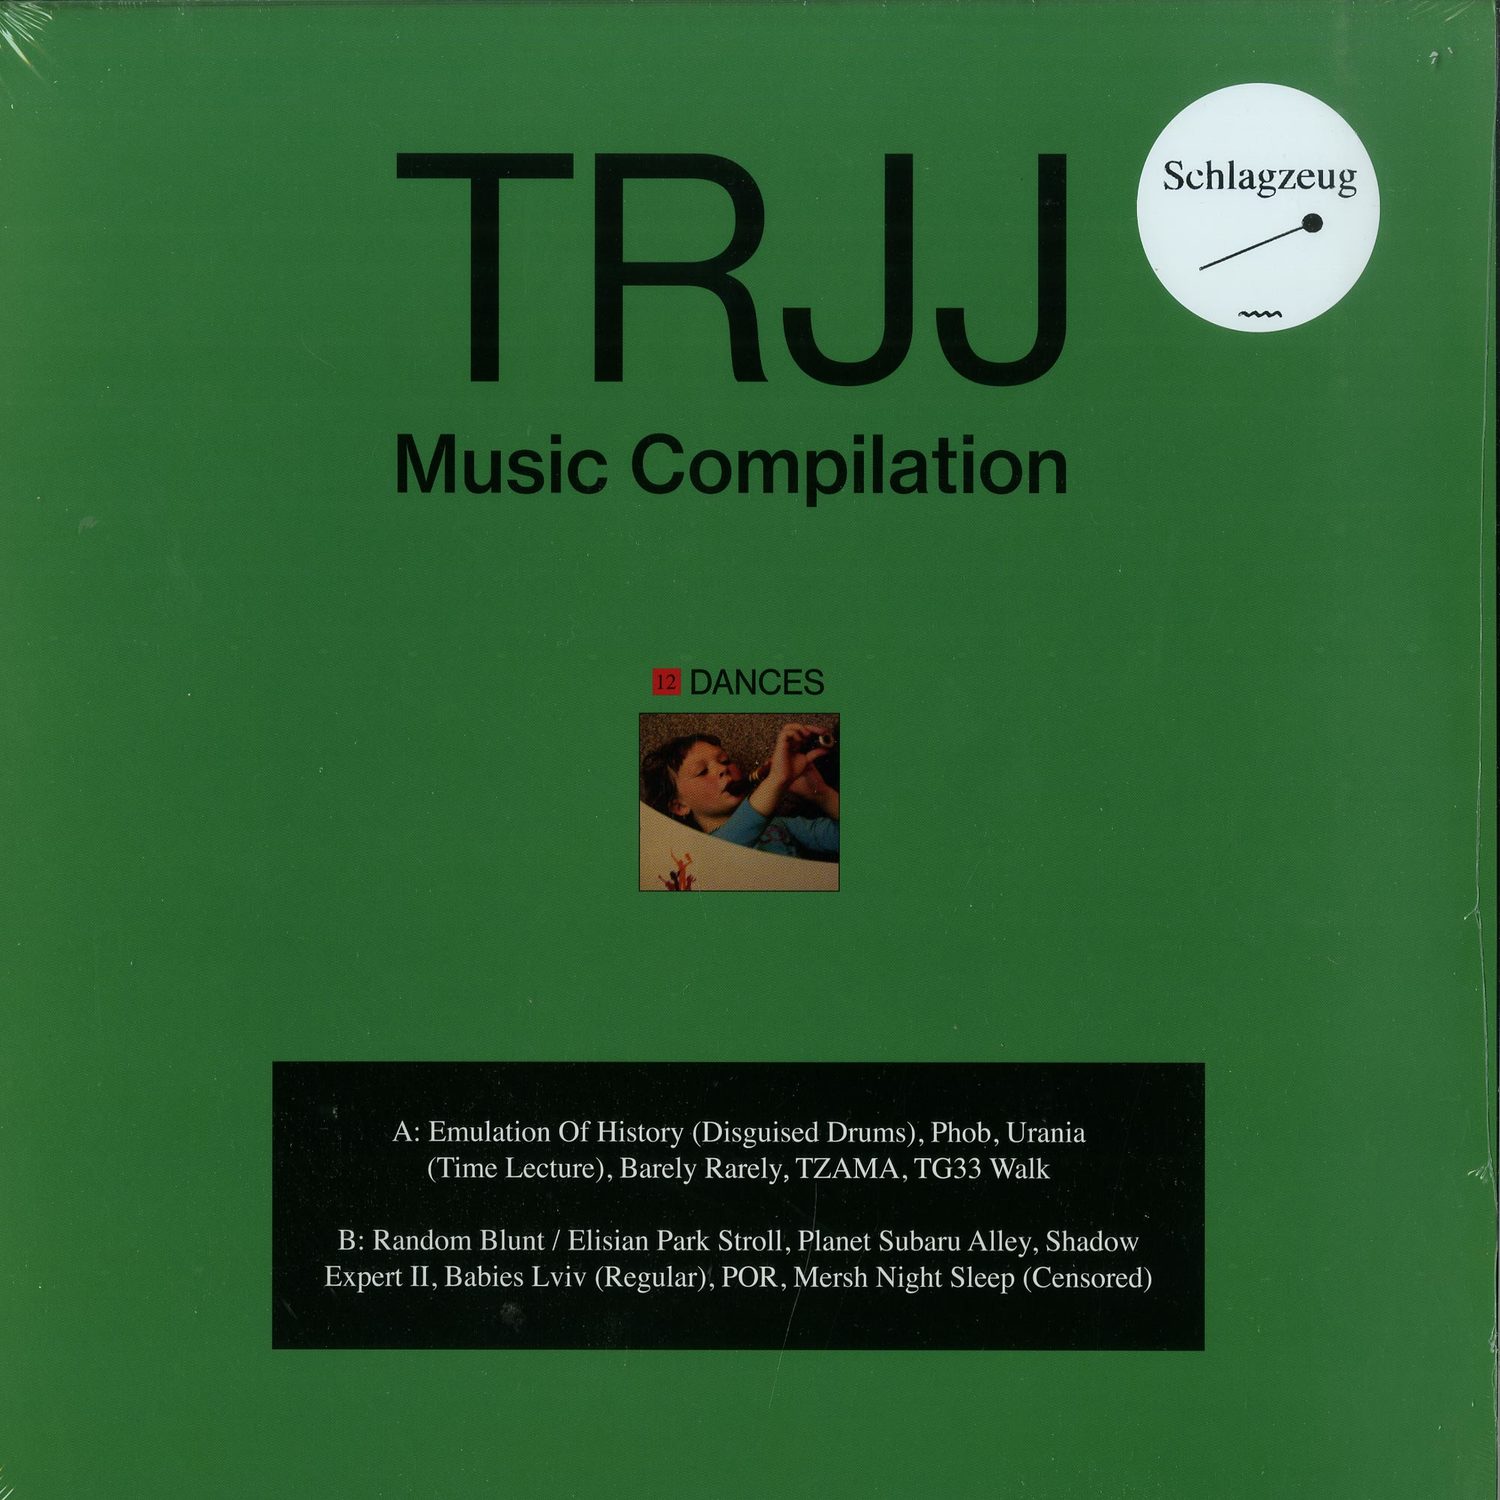 TRJJ - MUSIC COMPILATION: 12 DANCES